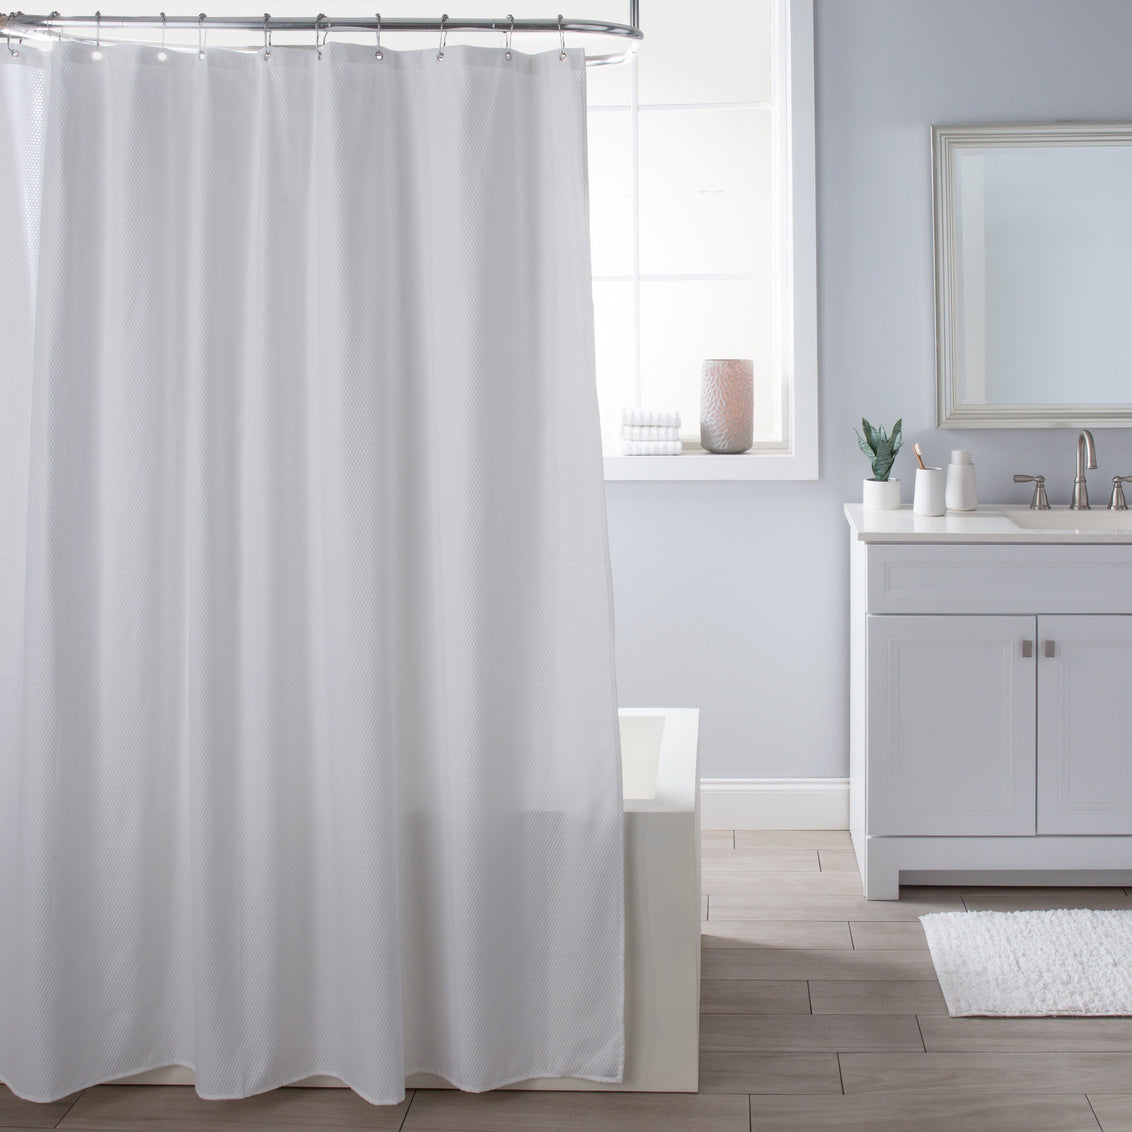 Delano White Microfiber Shower Curtain/Liner